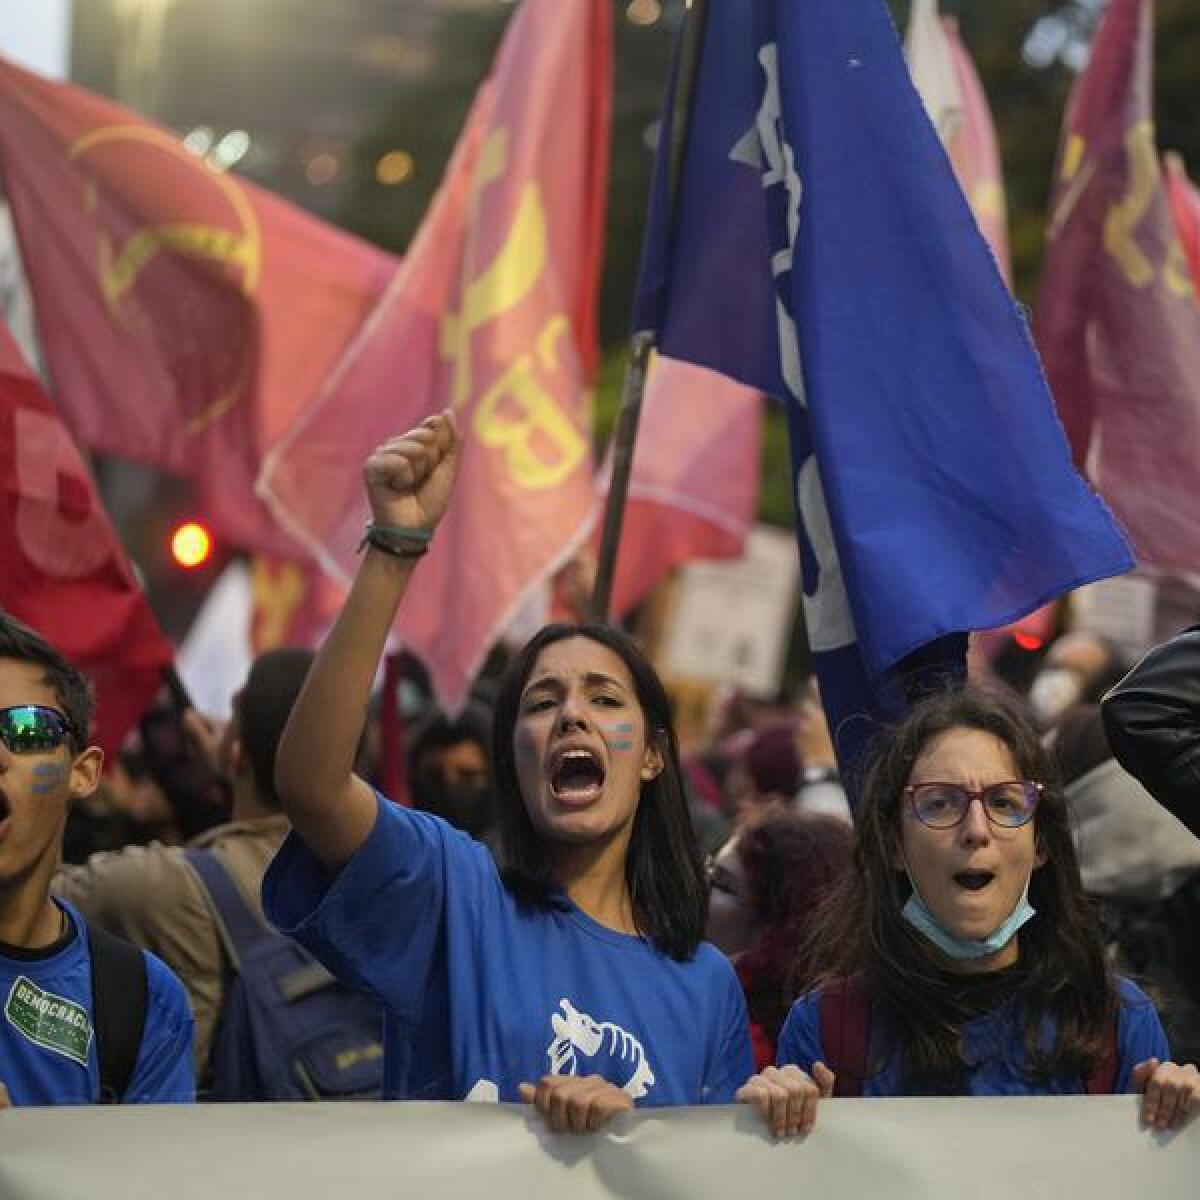 Students shout slogans against Brazil's president.